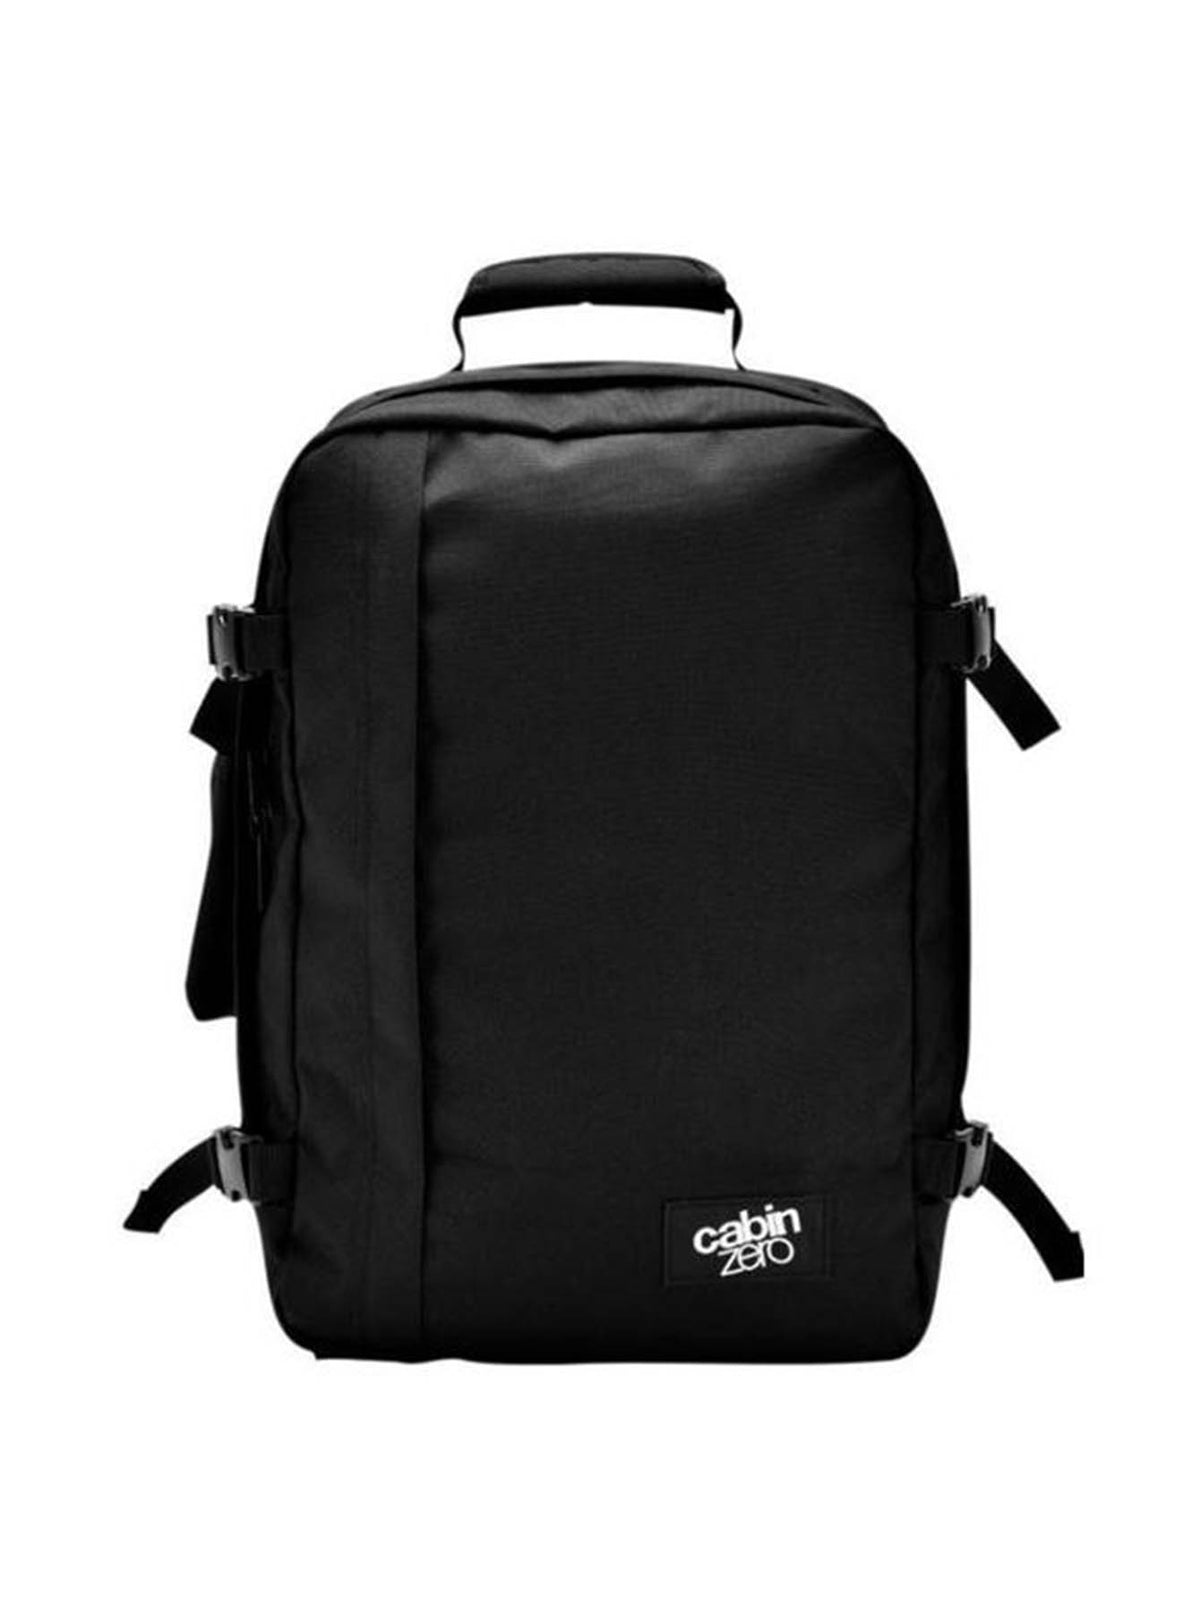 Cabinzero Classic 36L Ultra-Light Cabin Bag in Absolute Black Color